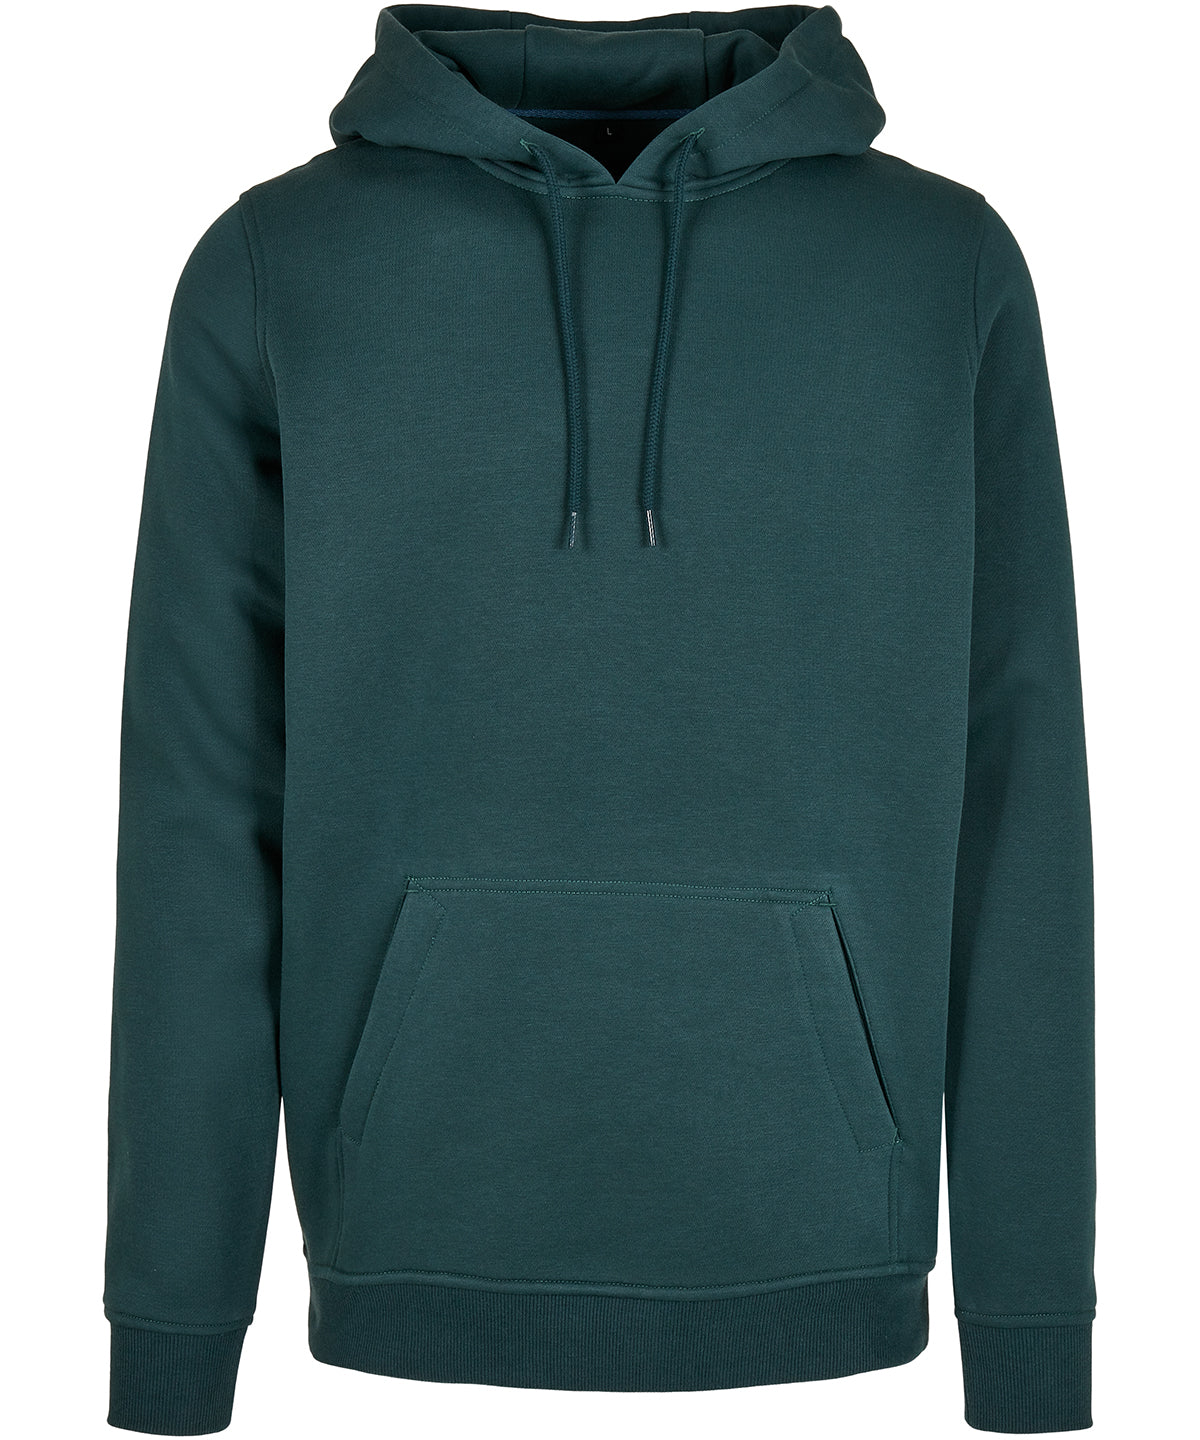 Personalised Hoodies - Dark Brown Build Your Brand Heavy hoodie